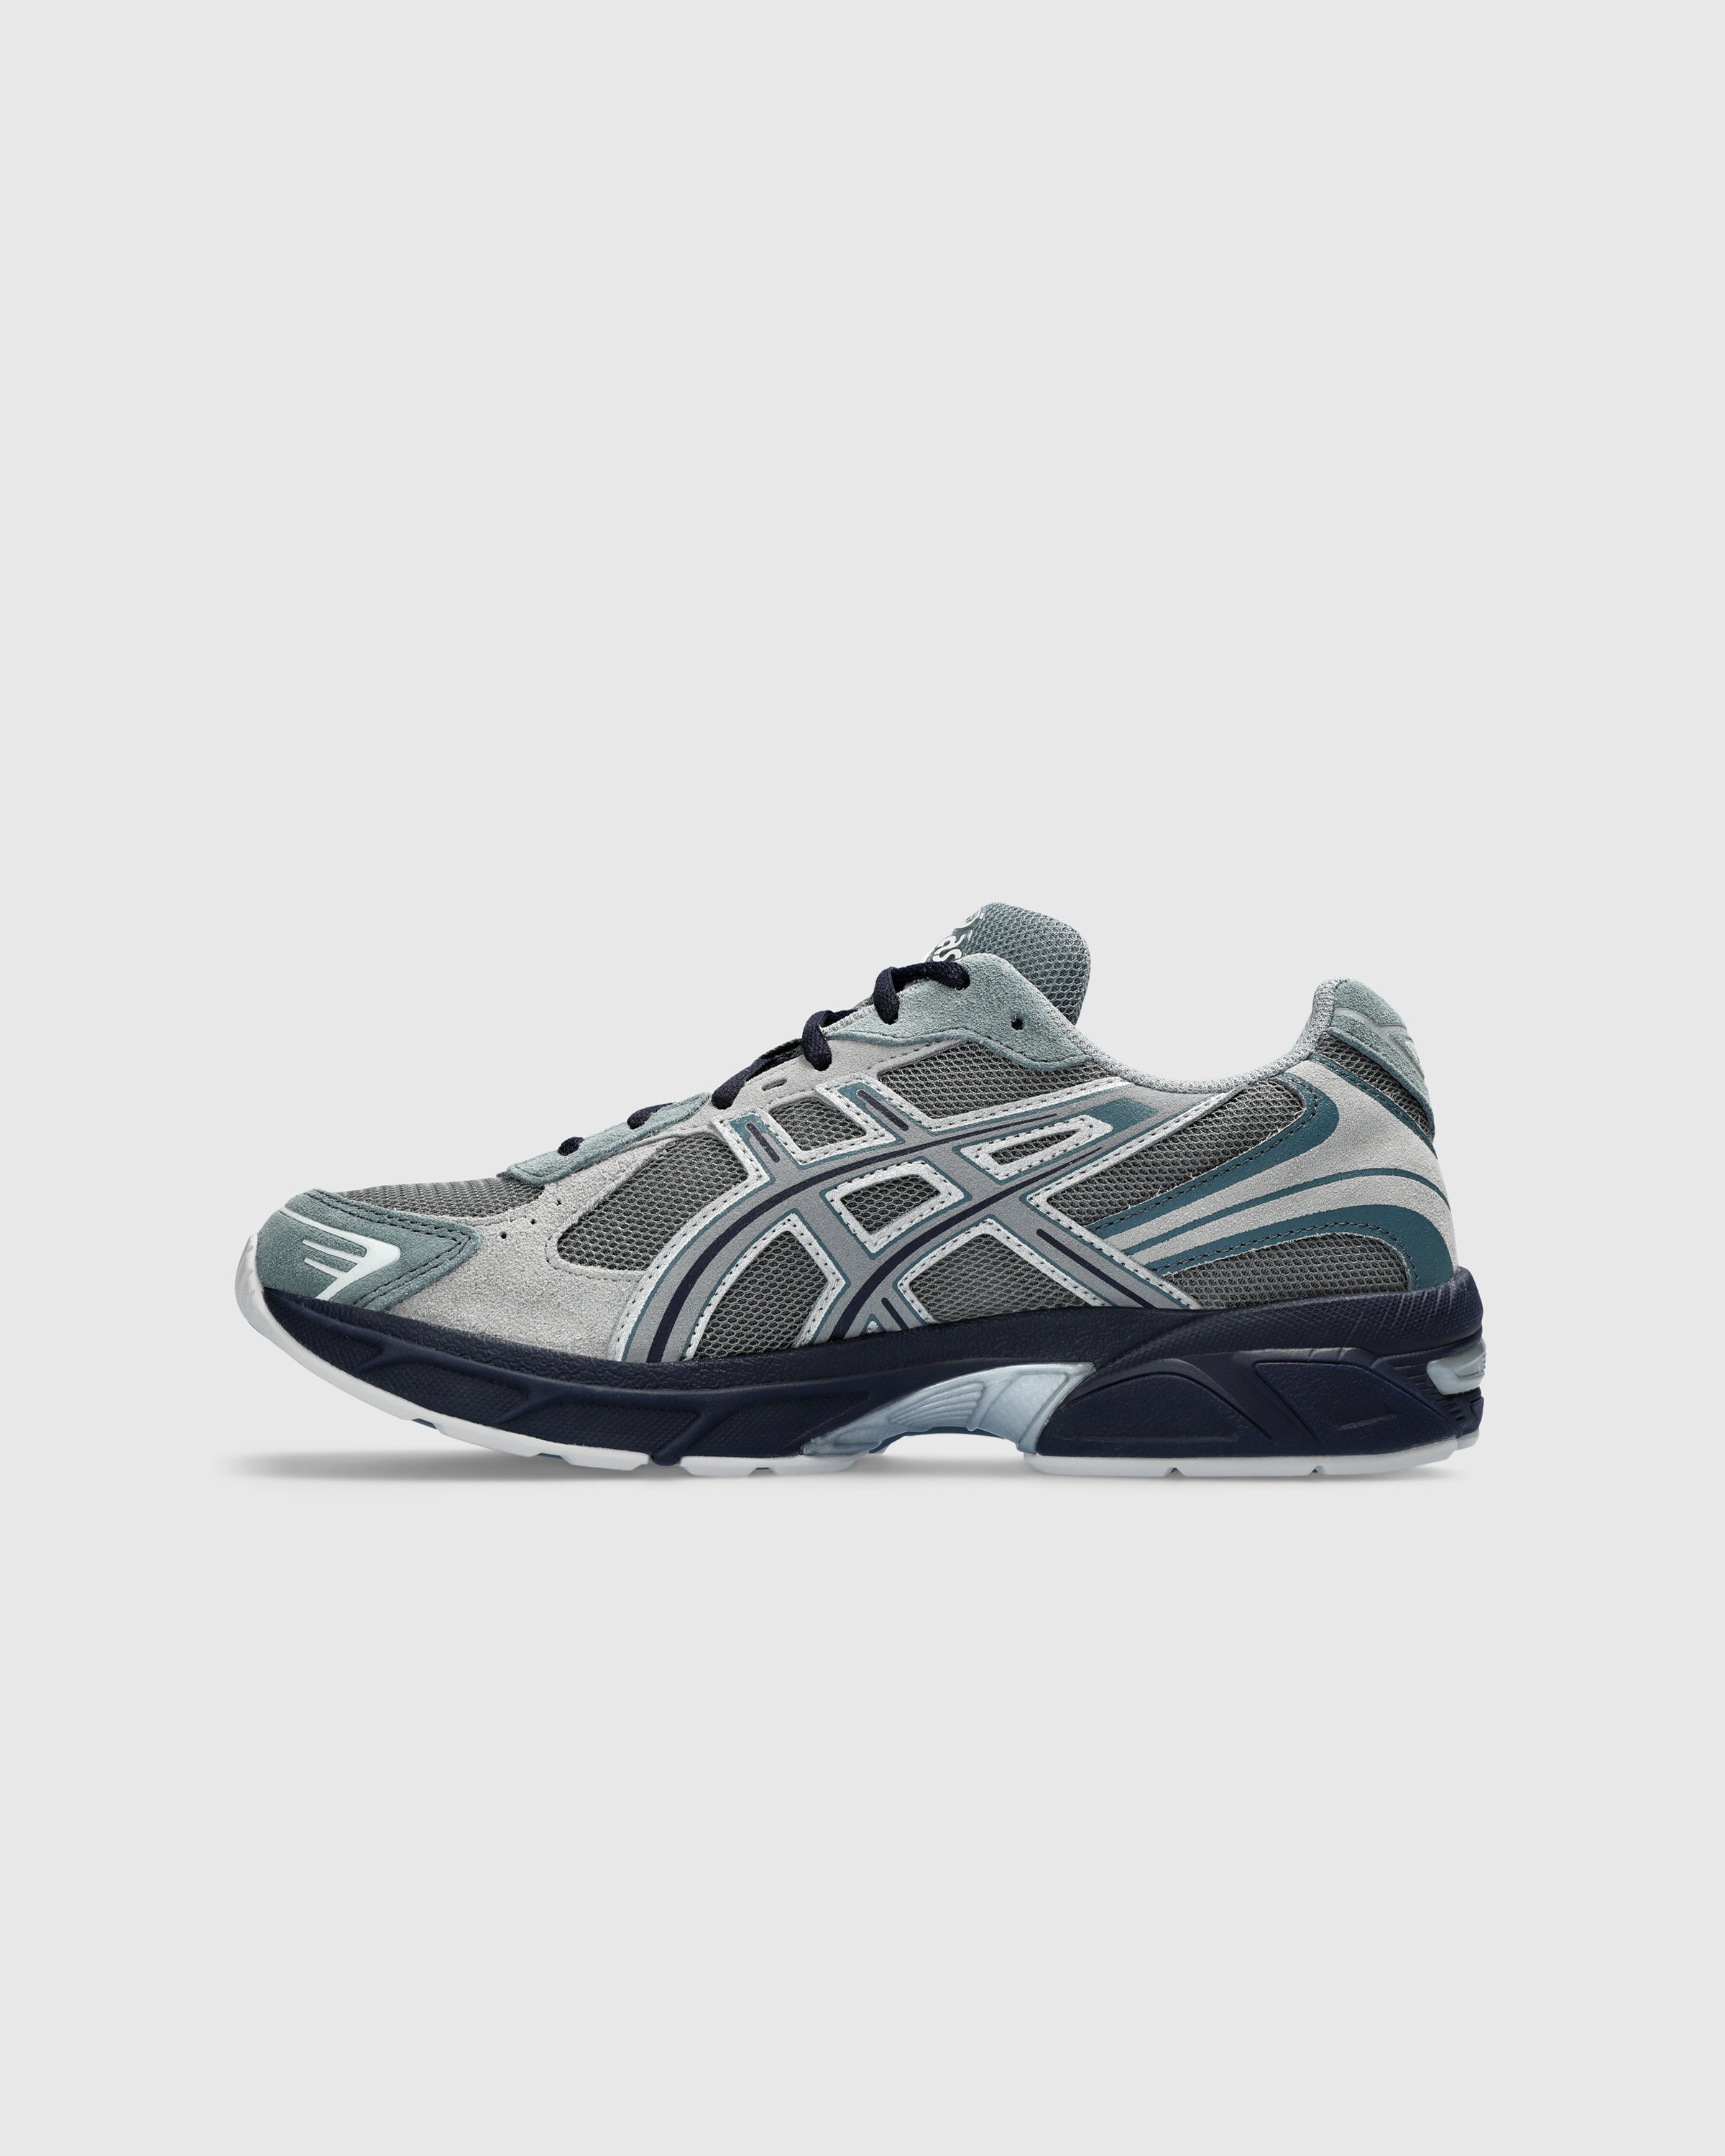 asics - GEL-1130 Steel Gray/Sheet Rock - Footwear - Grey - Image 2